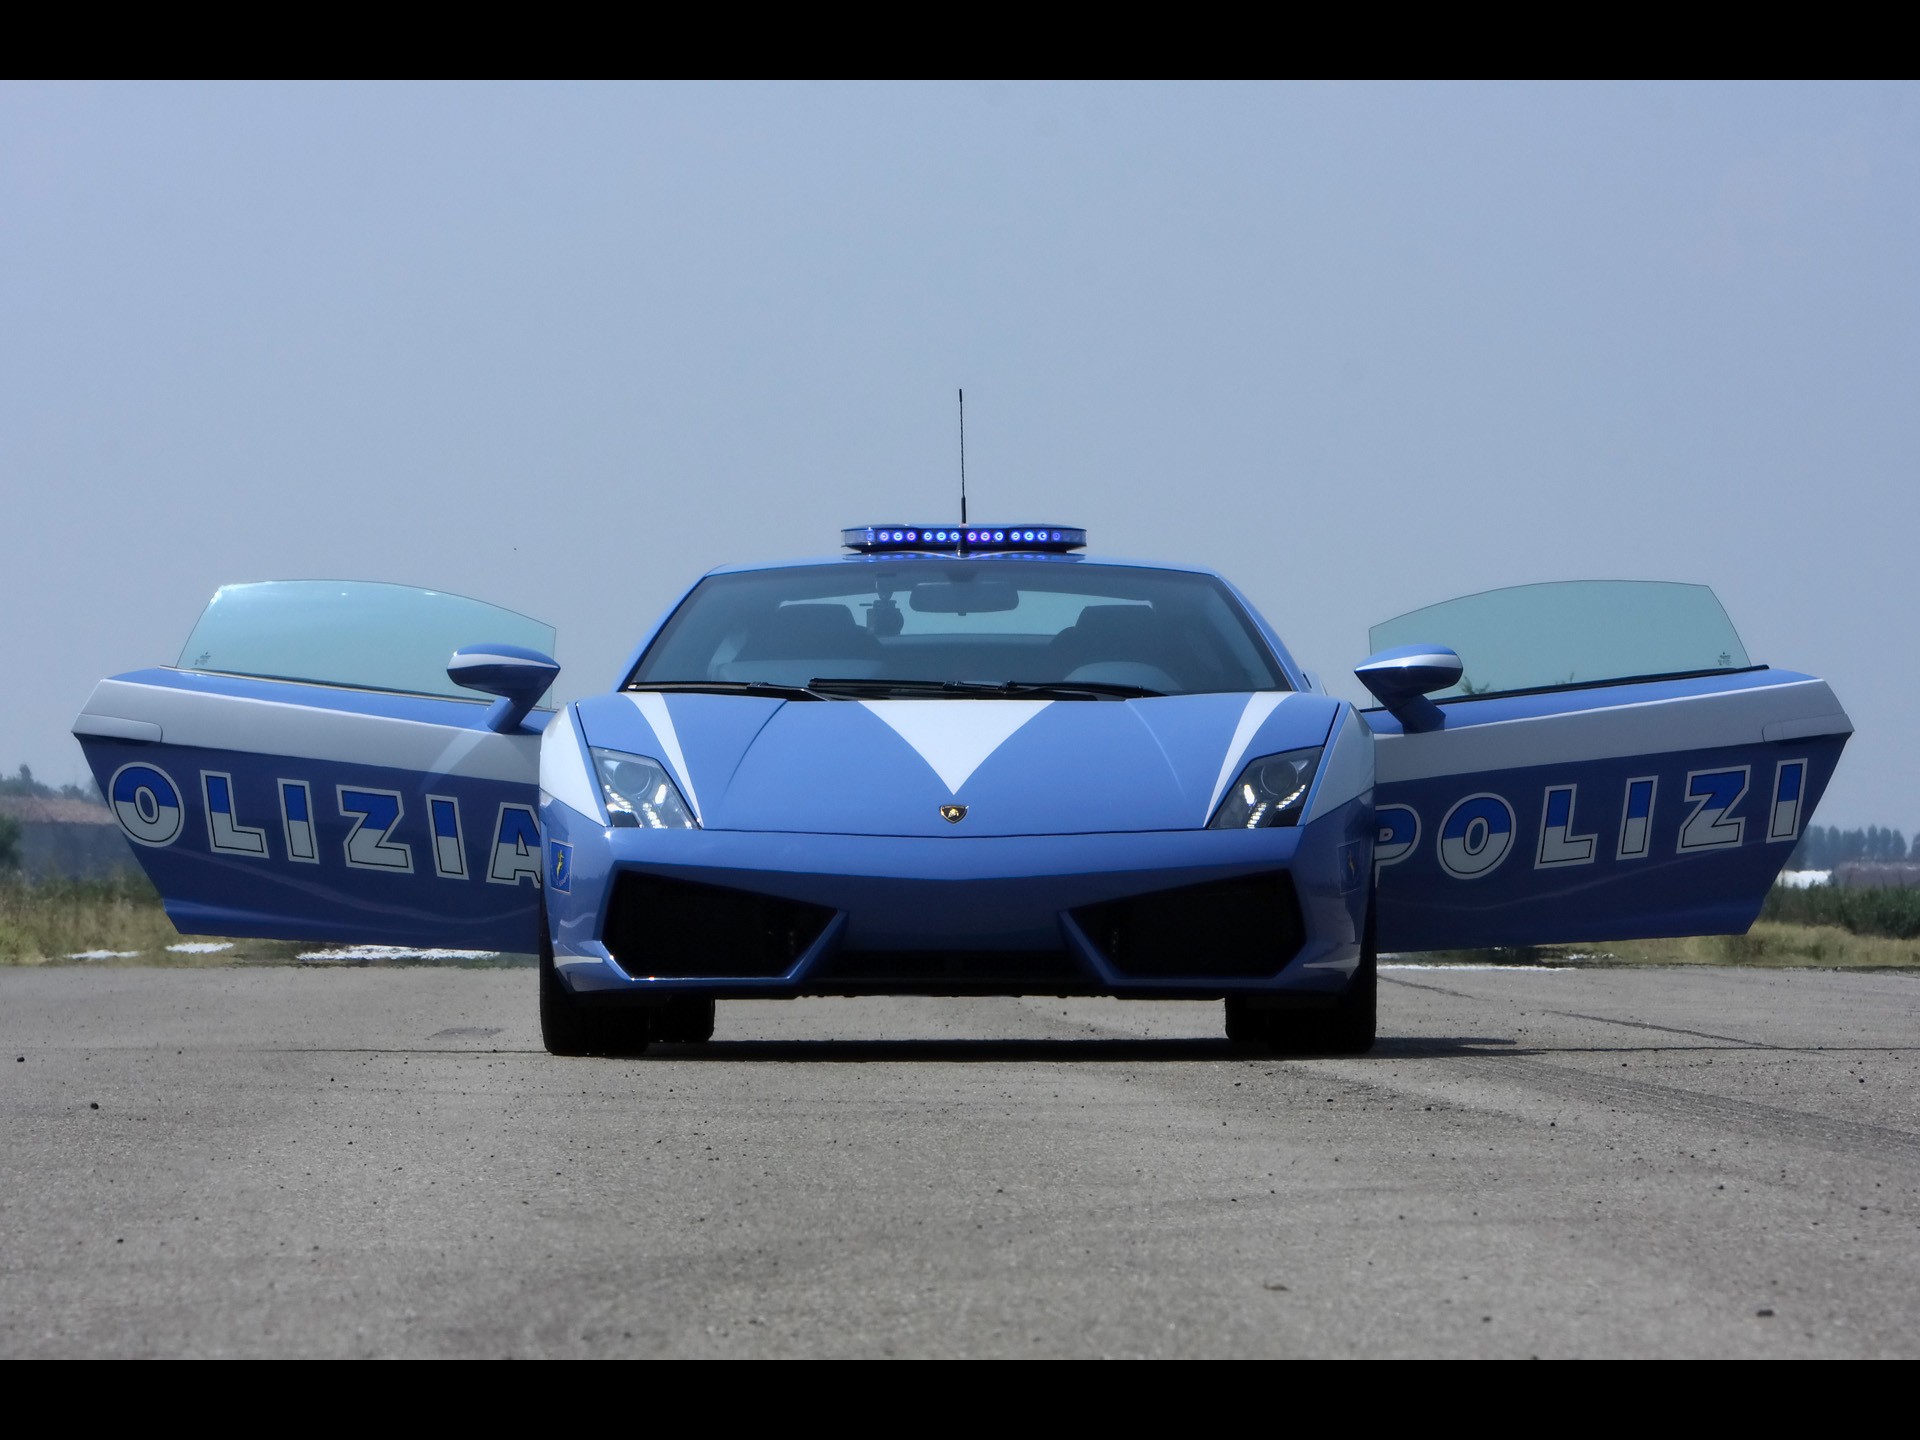 автомобили, полиция, Ламборгини, транспортные средства, Lamborghini Murcielago, Lamborghini Gallardo, итальянские автомобили - обои на рабочий стол